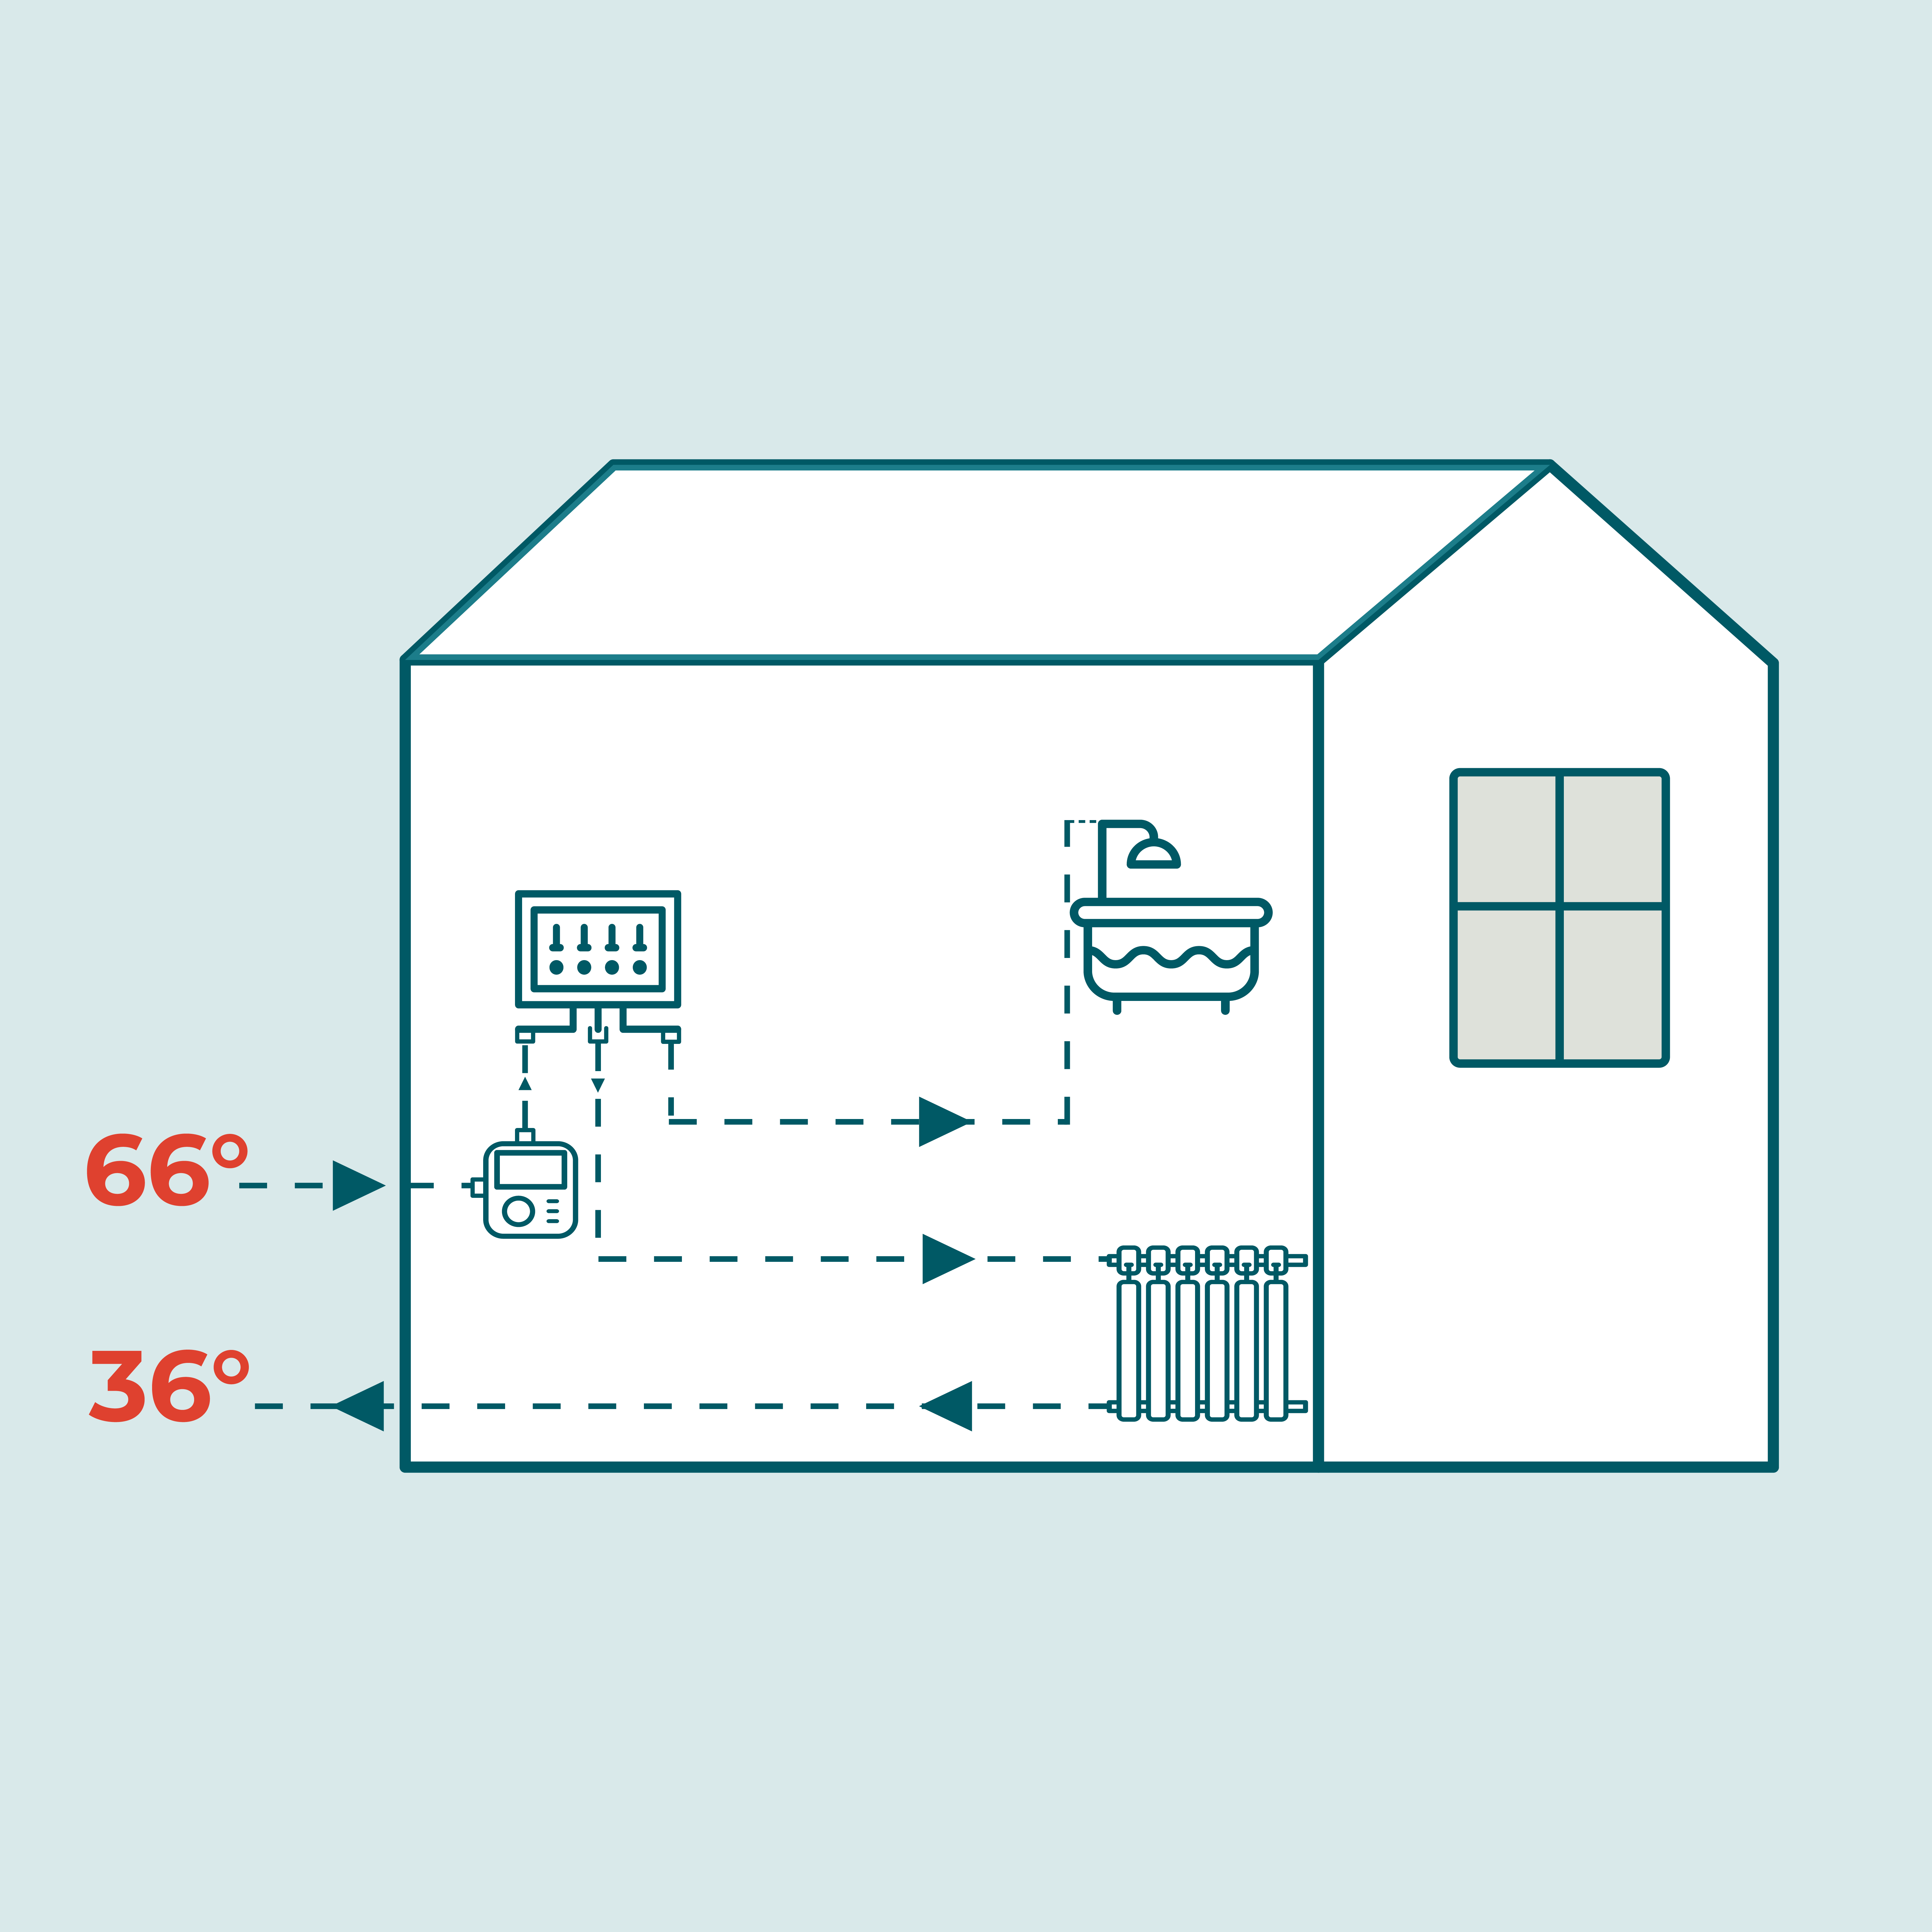 Billedet viser en illustration som bruges til at understøtte det skriftelige eksempel. Billedet viser et hus, der modtager fjernvarme ved en temperatur på 66 grader, men med en temperatur på 36 grader, når vandet føres ud fra huset og tilbage til anlægget.